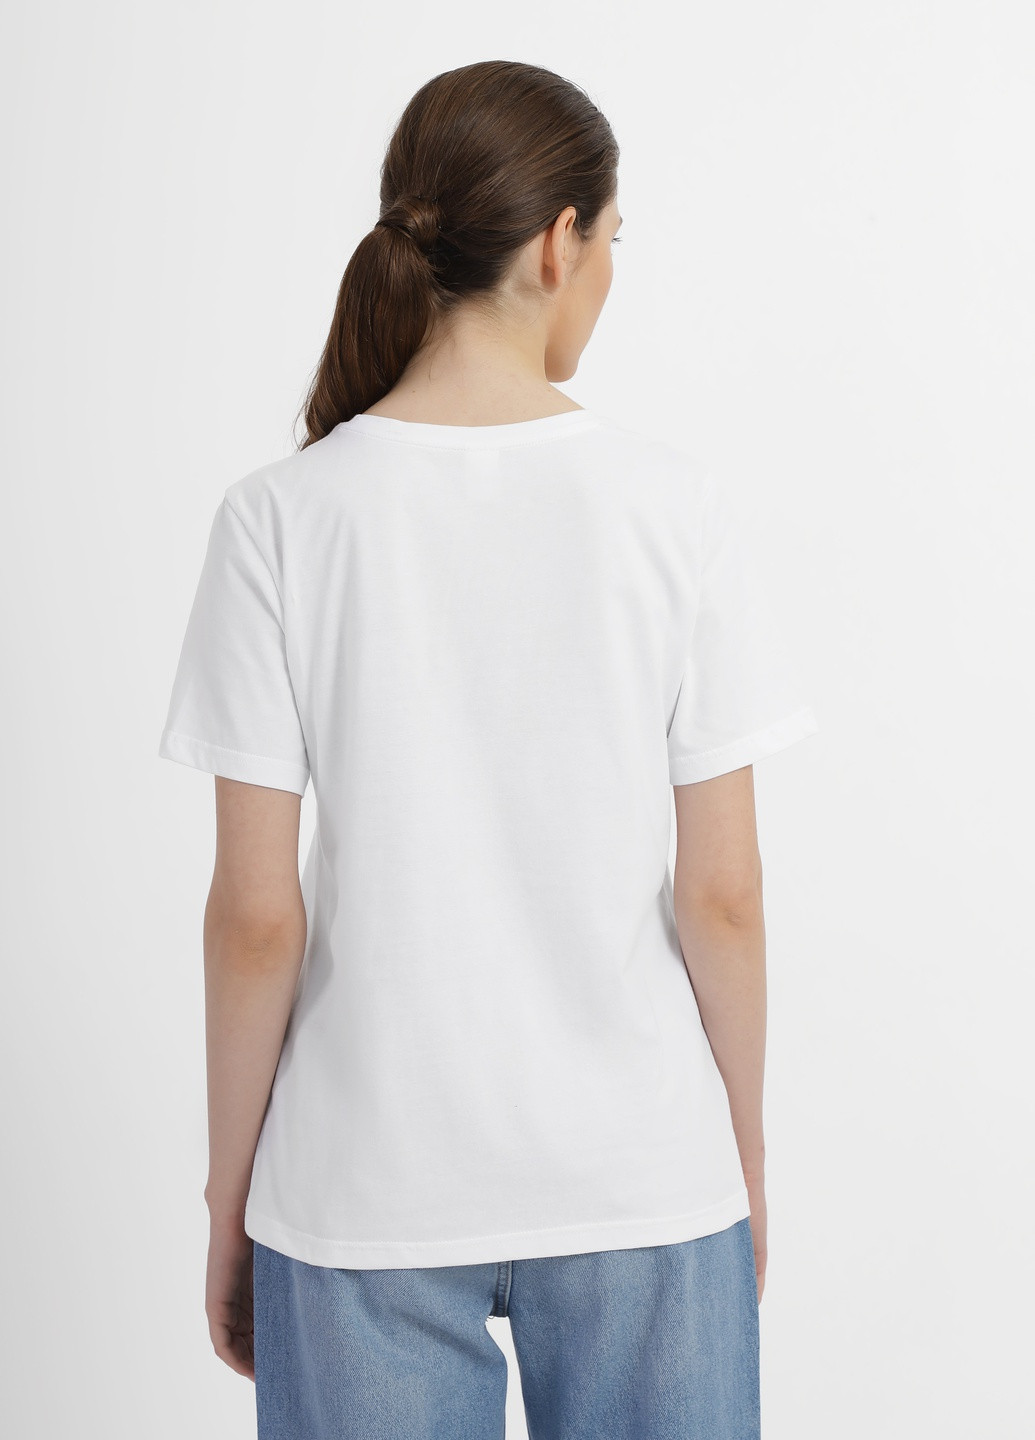 Белая летняя футболка женская Роза